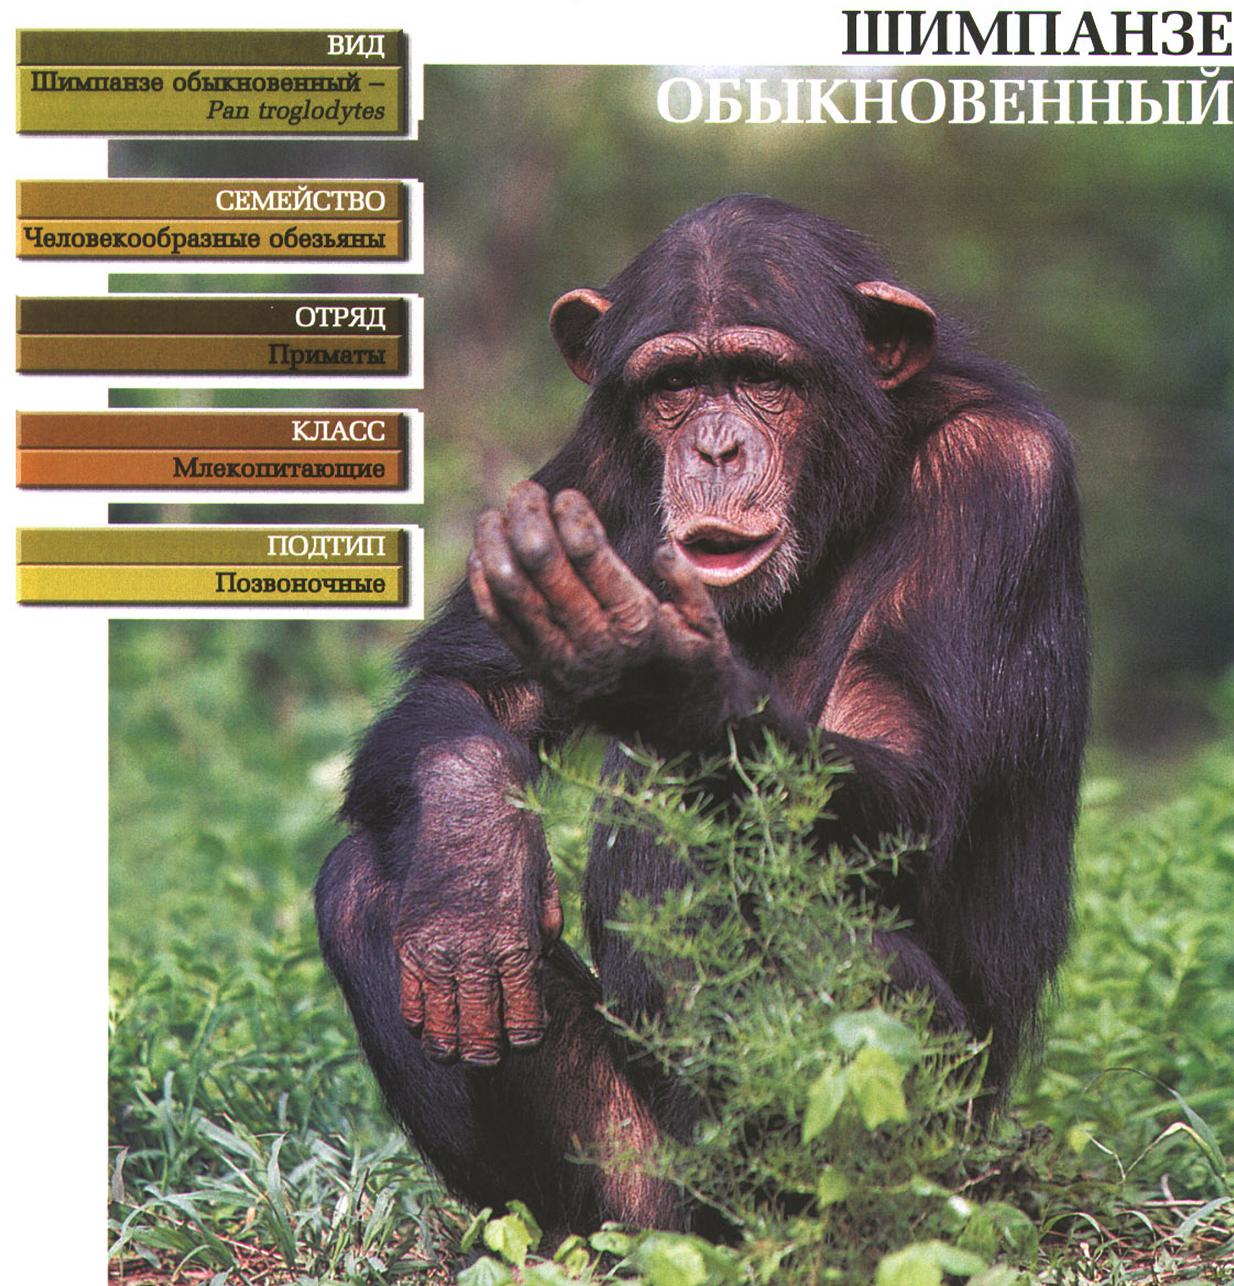 Систематика (научная классификация) шимпанзе обыкновенного. Pan troglodytes.